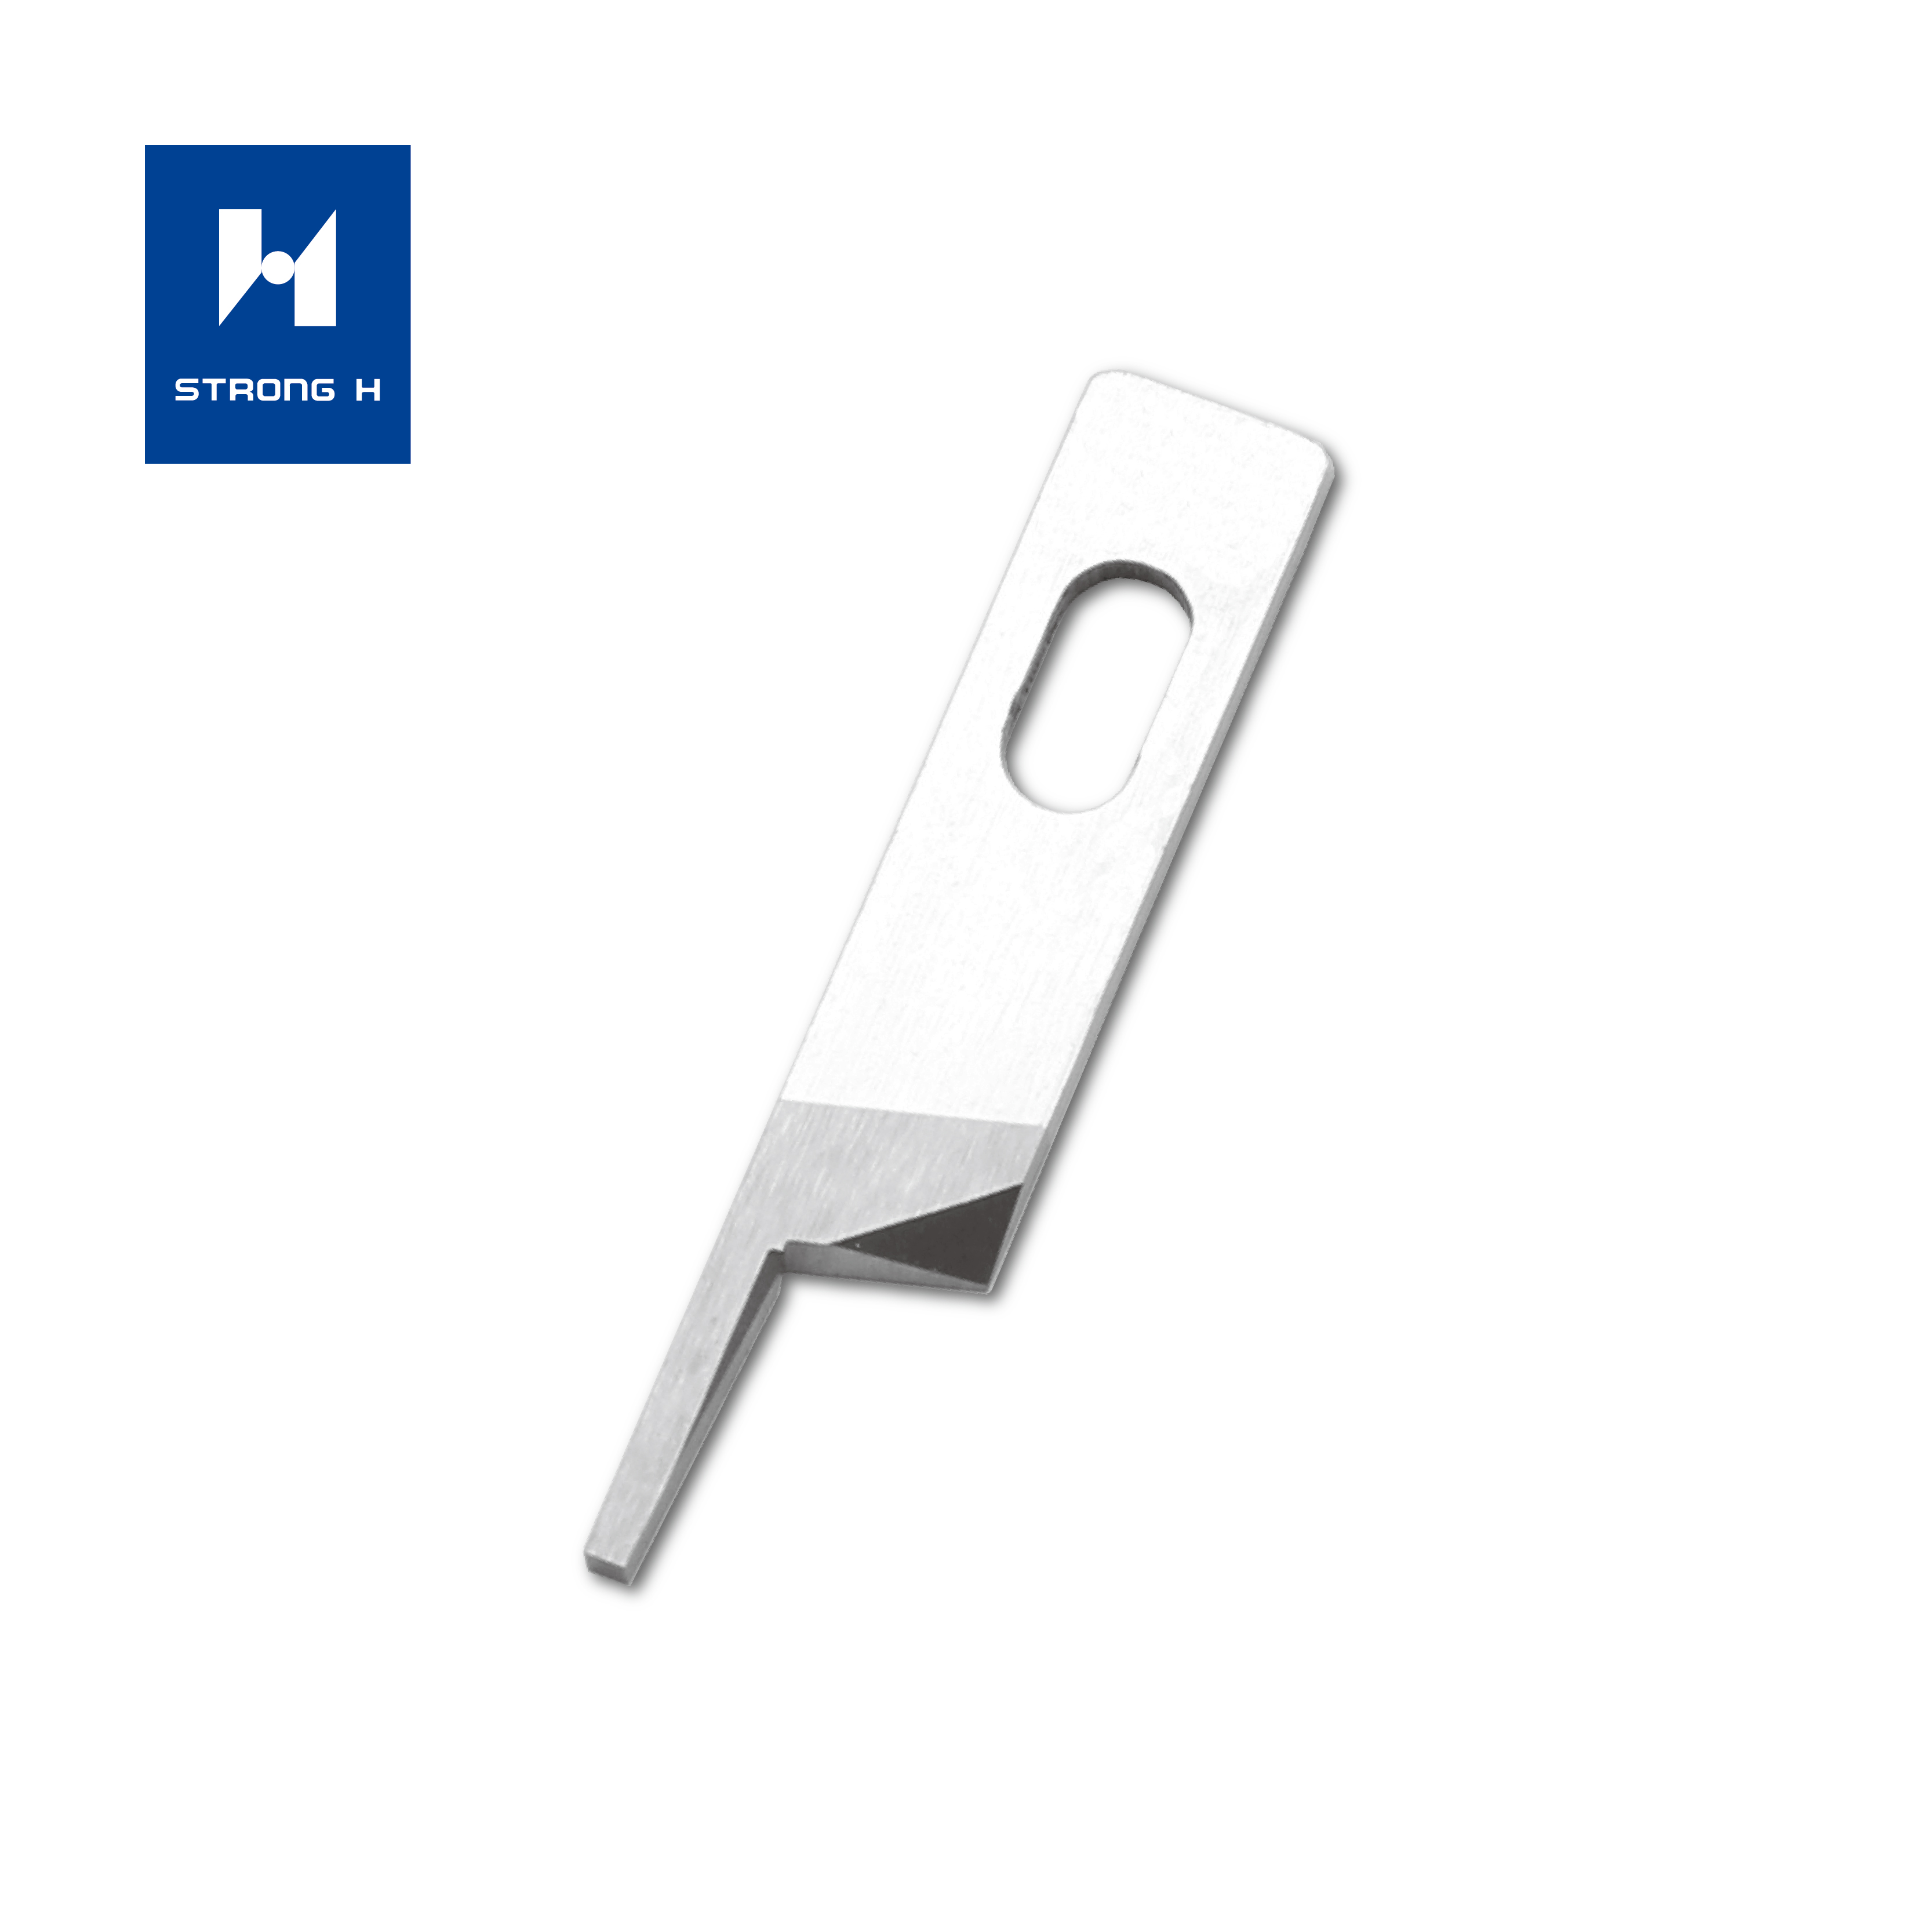 Couteaux de marque Pegasus de marque Siruba de marque Durkopp pour machines à coudre industrielles